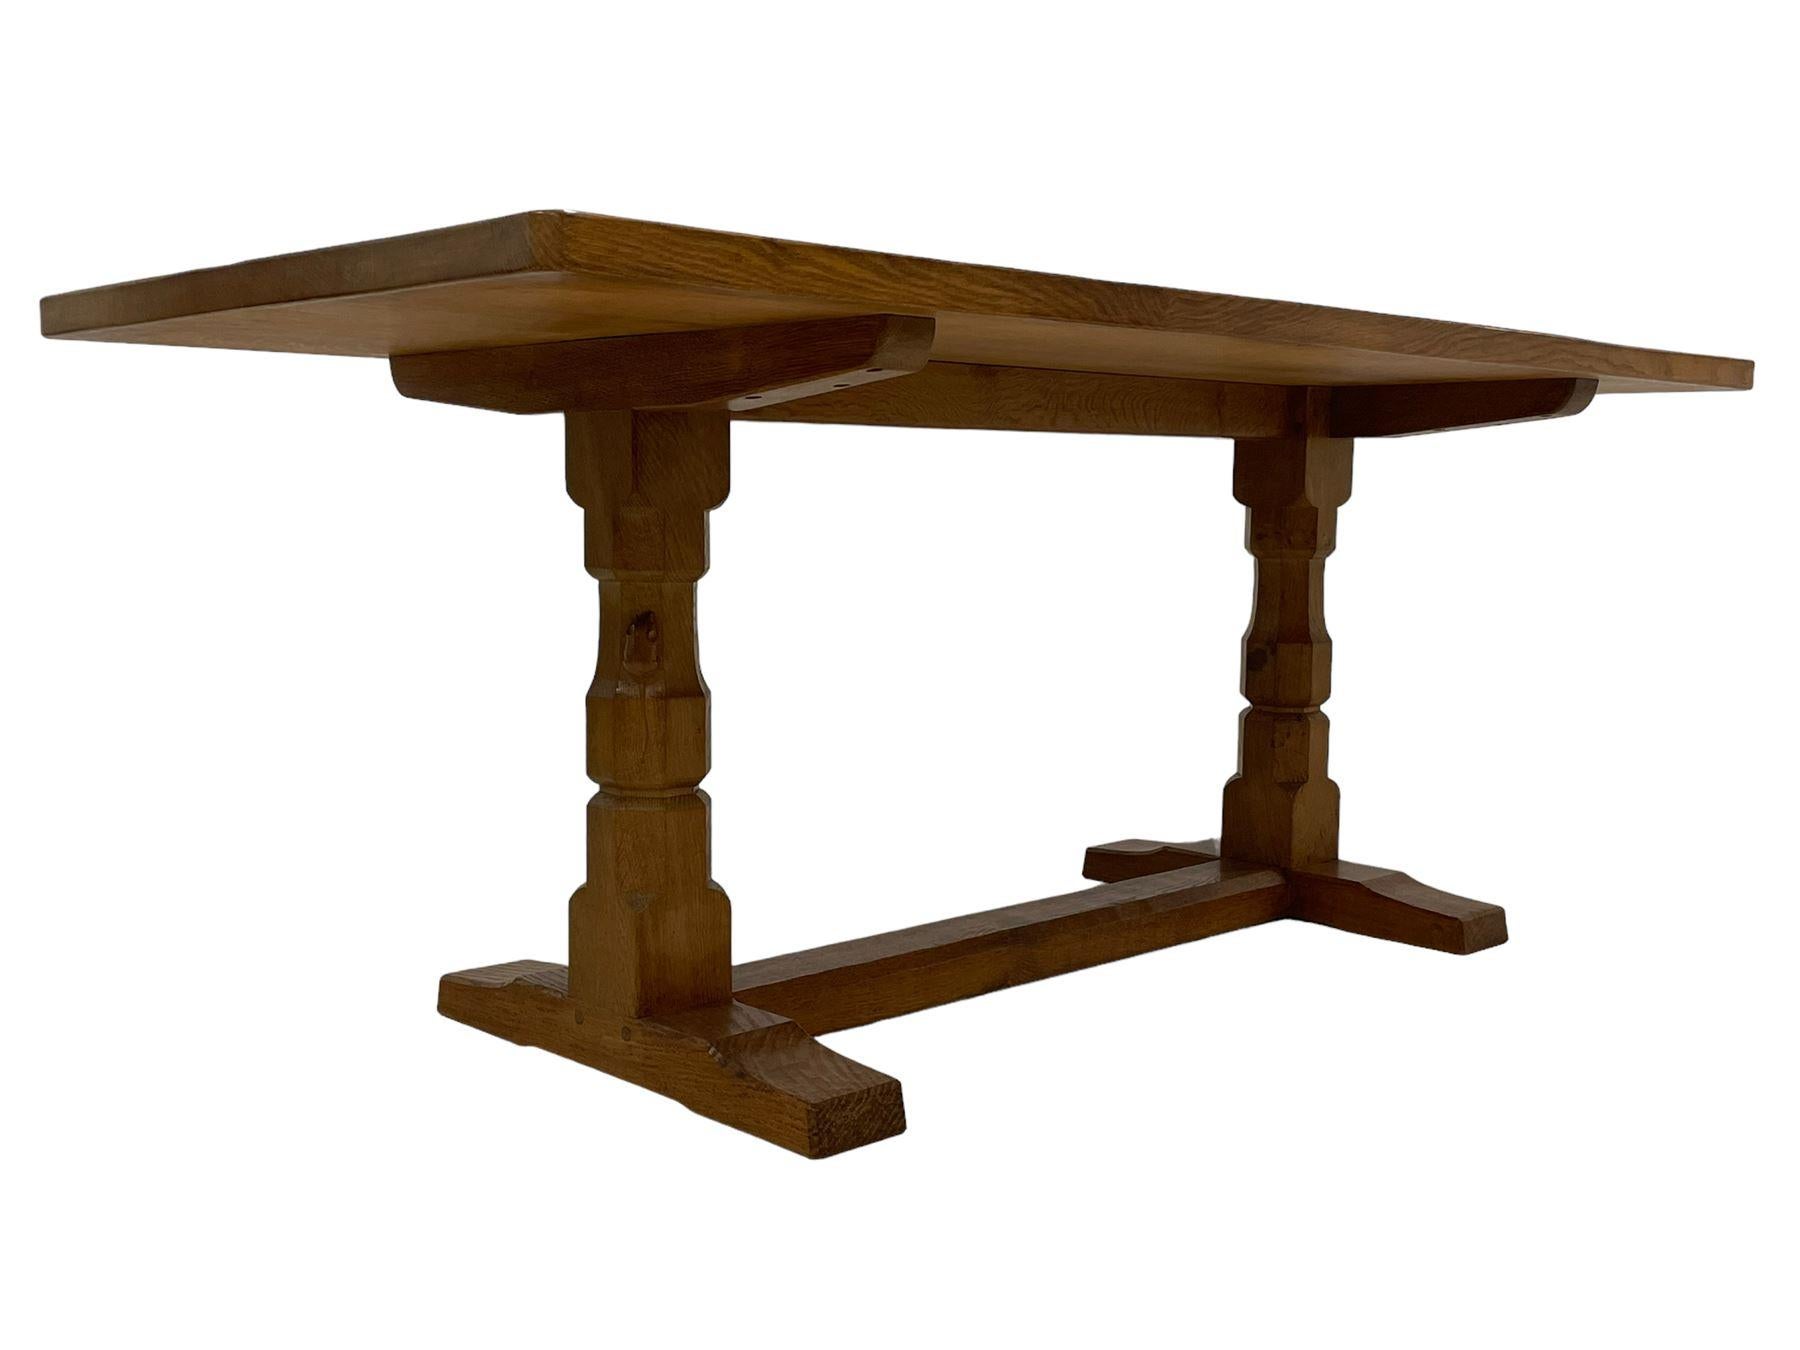  Un bel ensemble de meubles Mouseman - une table de réfectoire de 6 pieds en chêne adzed, avec un plateau rectangulaire raboté reposant sur deux supports octogonaux sur des pieds lisses réunis par un châssis au sol sculpté avec la signature d'une